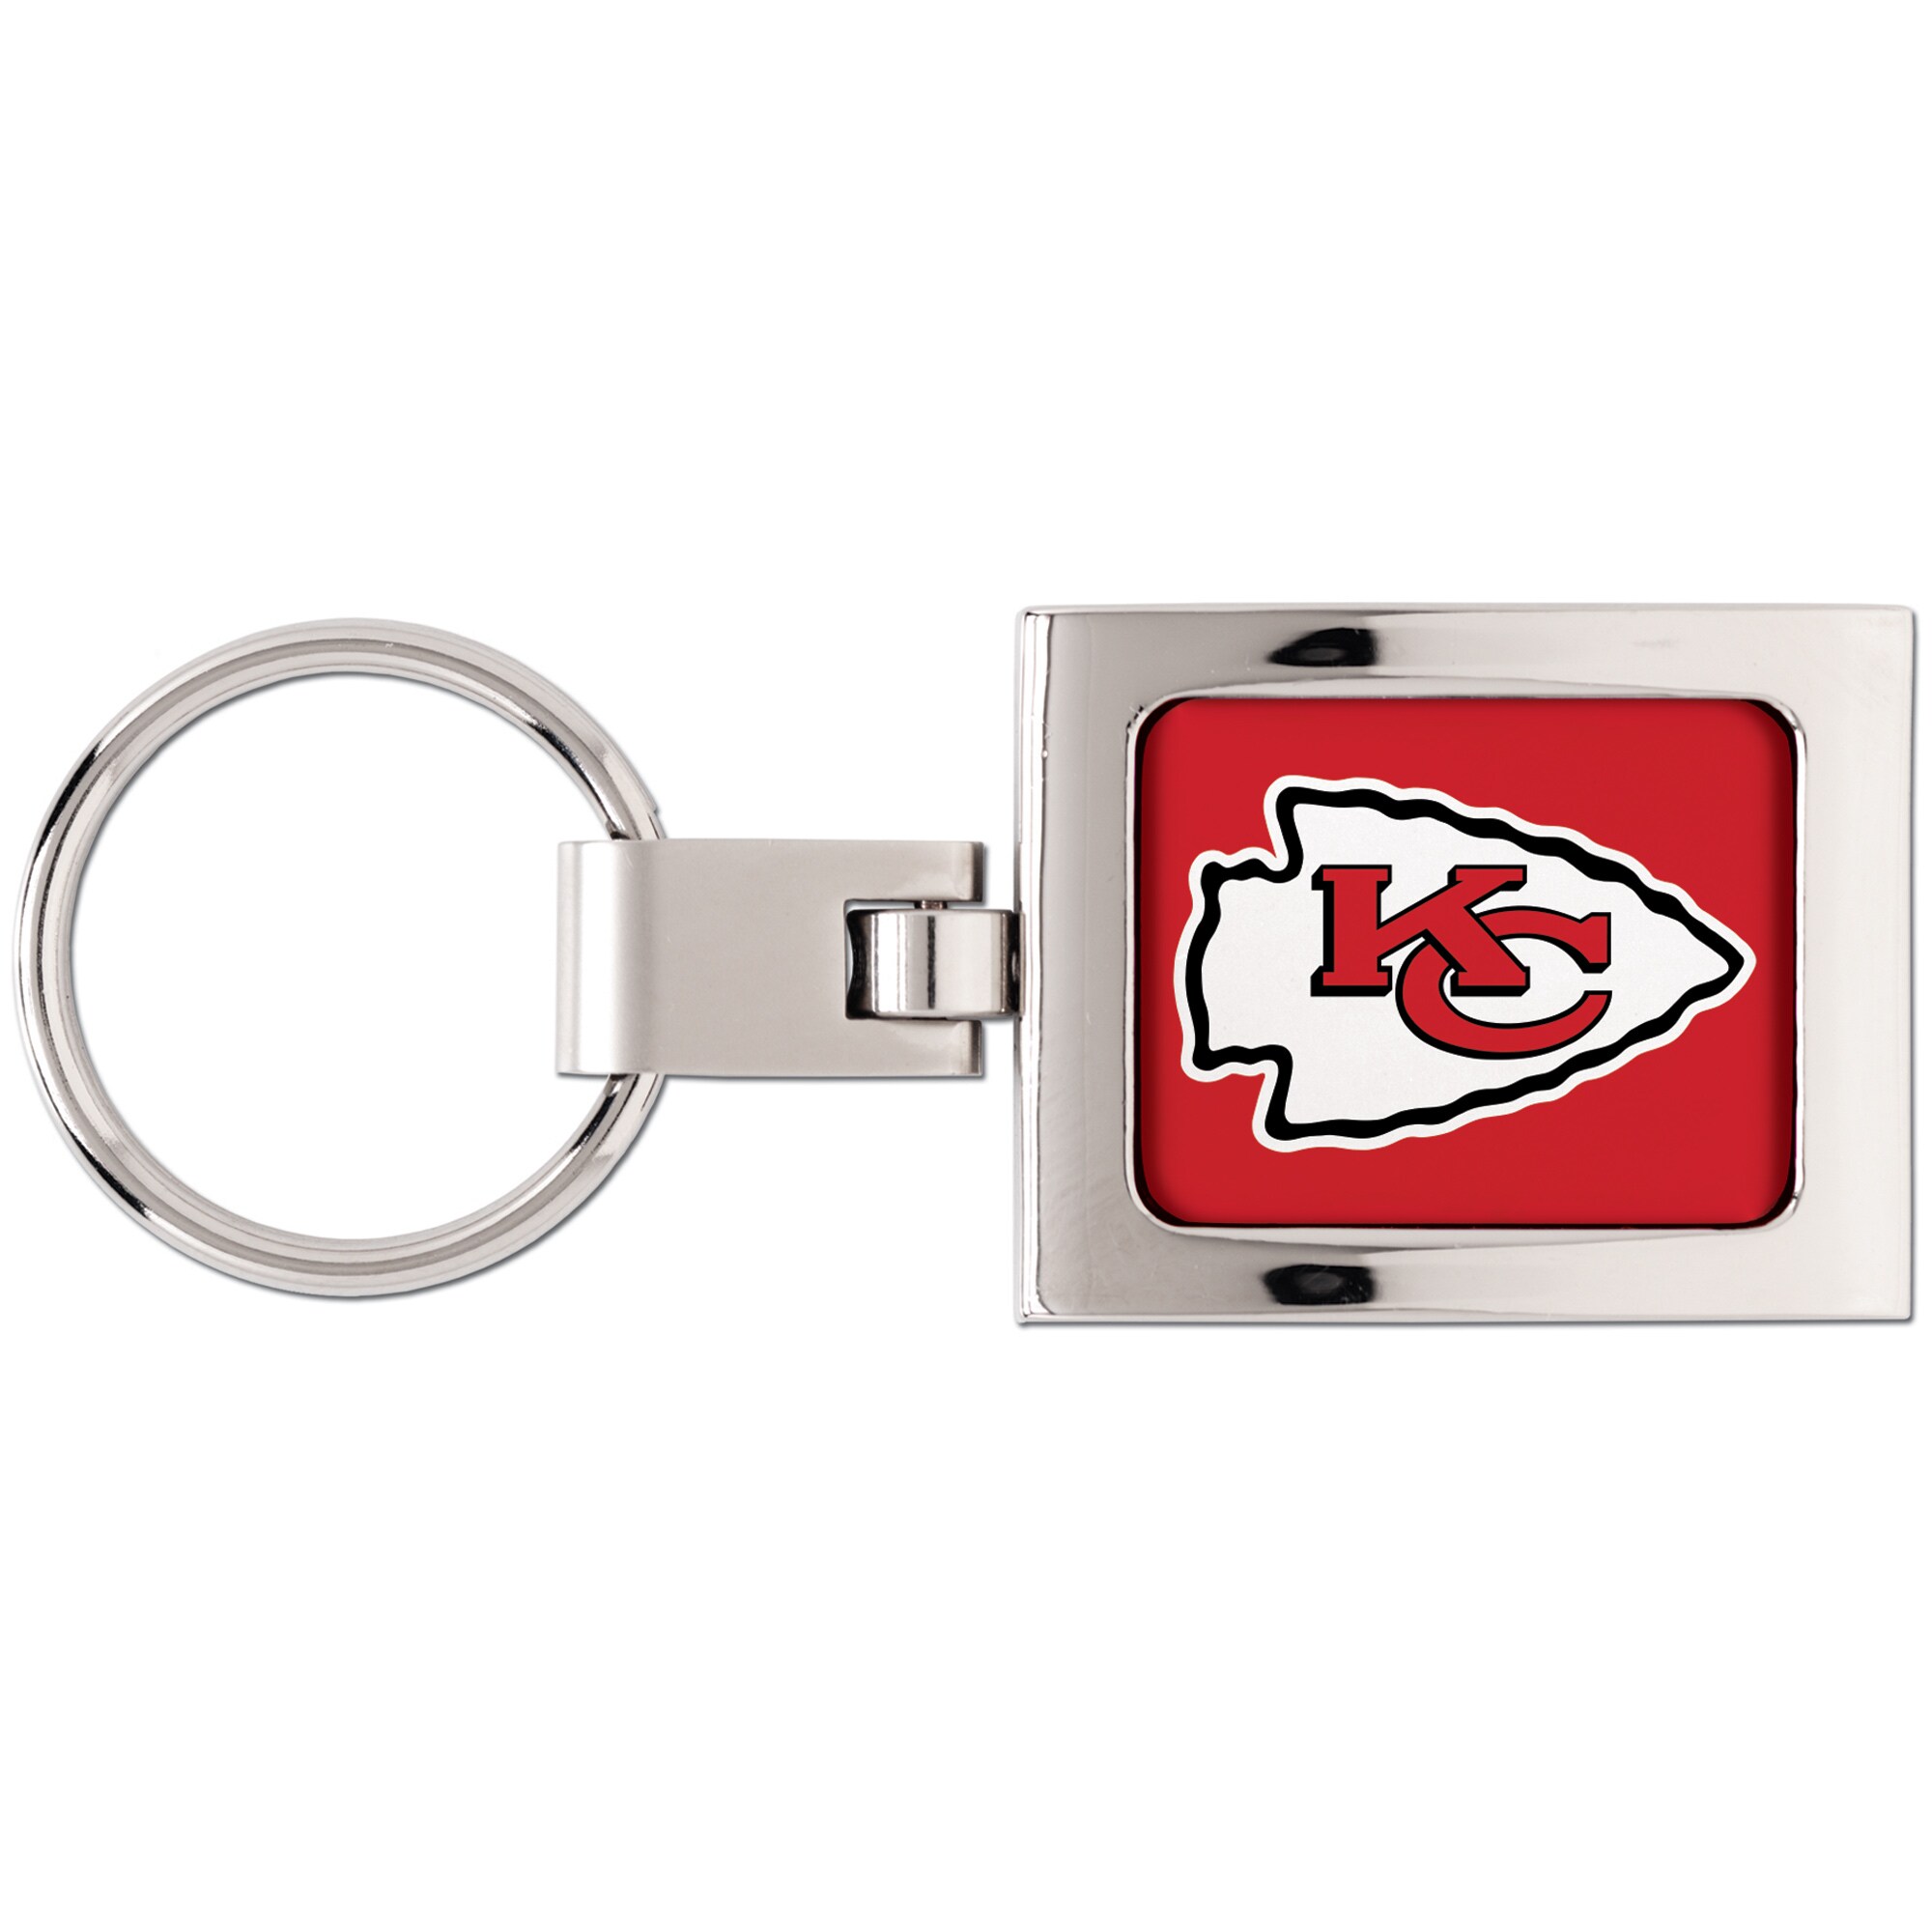 【公式グッズ】NFL チーフス キーホルダー ウィンクラフト (Premium Metal Key Ring)